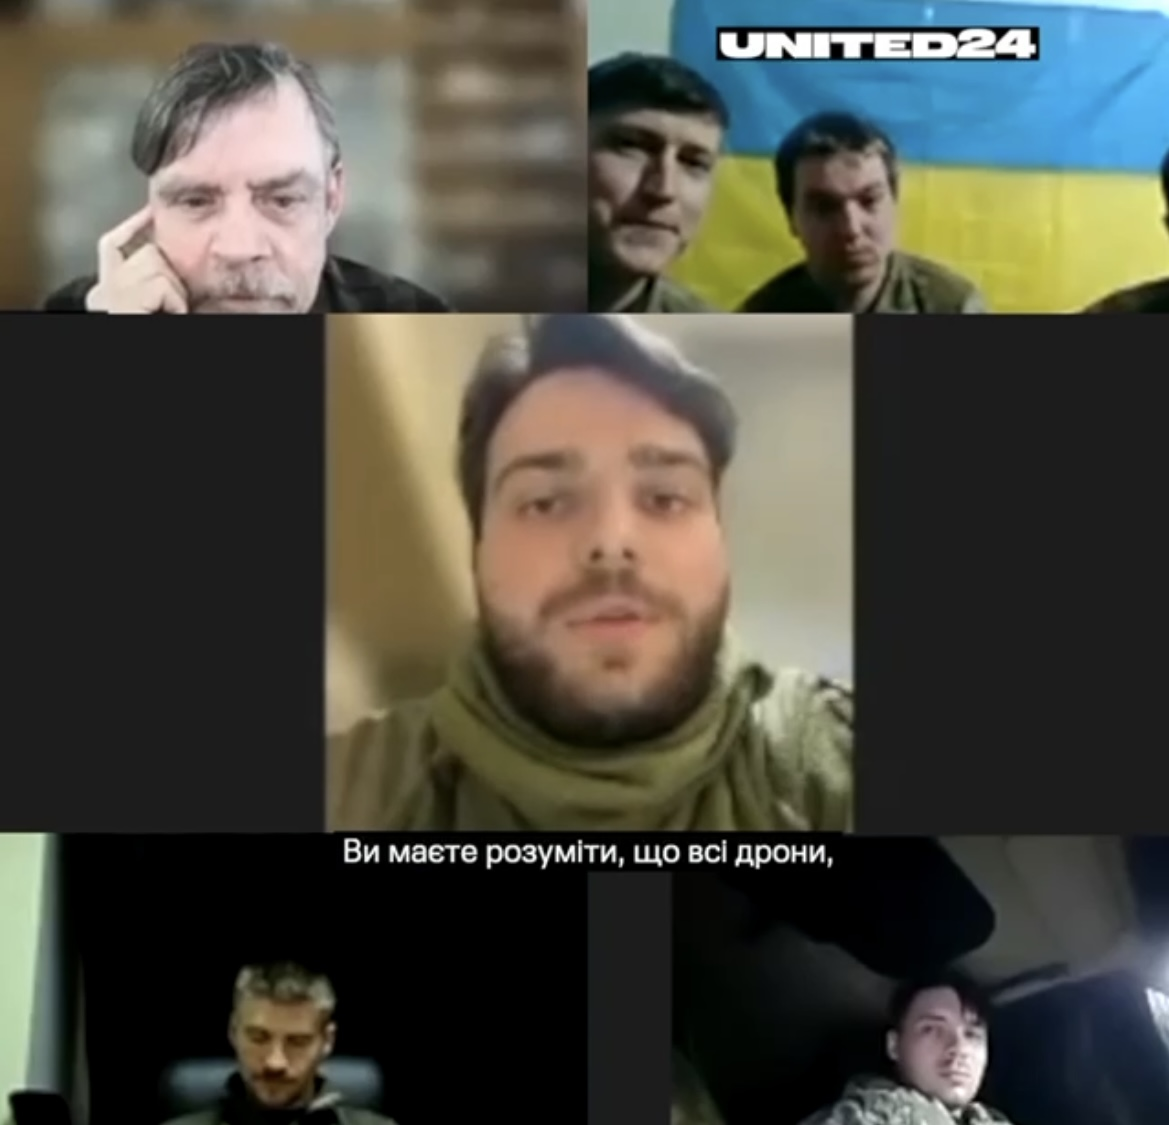 Зірка "Зоряних воєн" поспілкувався з українськими захисниками: я граю воїна у кіно, а ви справжні герої справжньої війни